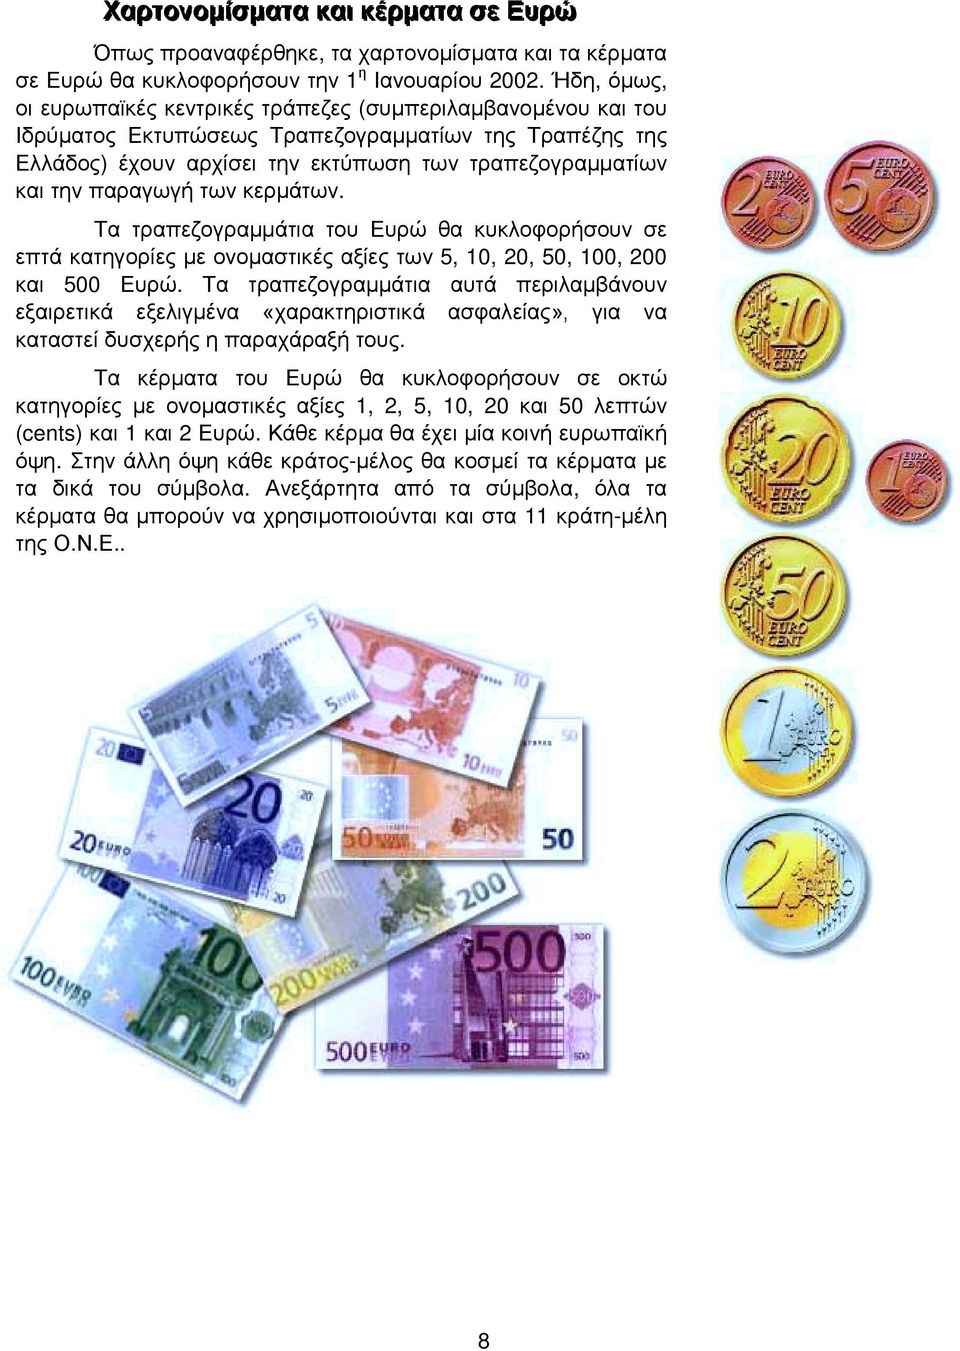 παραγωγή των κερµάτων. Τα τραπεζογραµµάτια του Ευρώ θα κυκλοφορήσουν σε επτά κατηγορίες µε ονοµαστικές αξίες των 5, 10, 20, 50, 100, 200 και 500 Ευρώ.